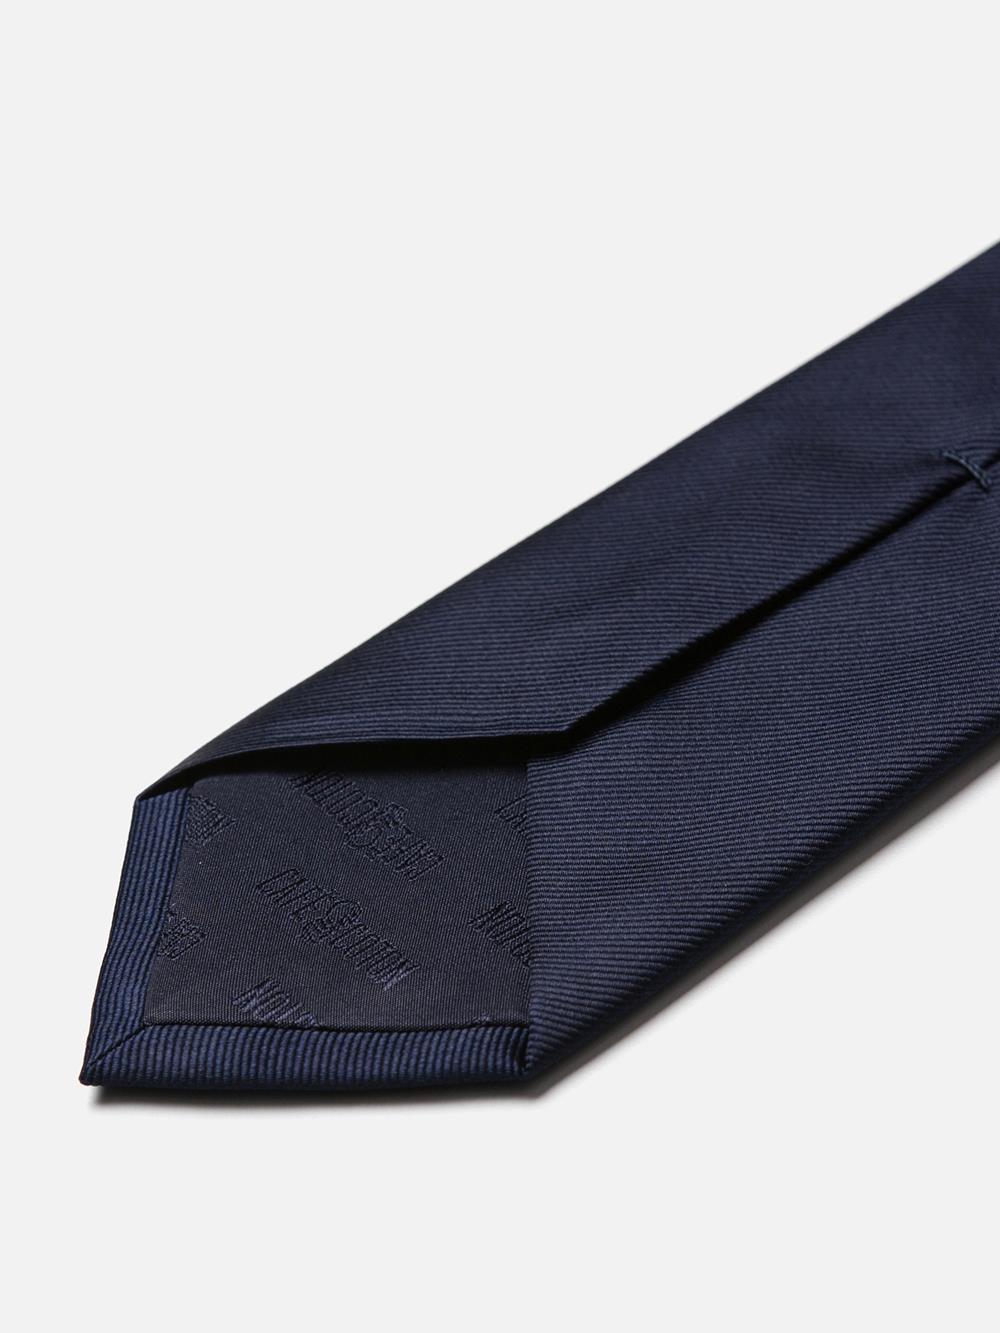 Tie in navy silk twill